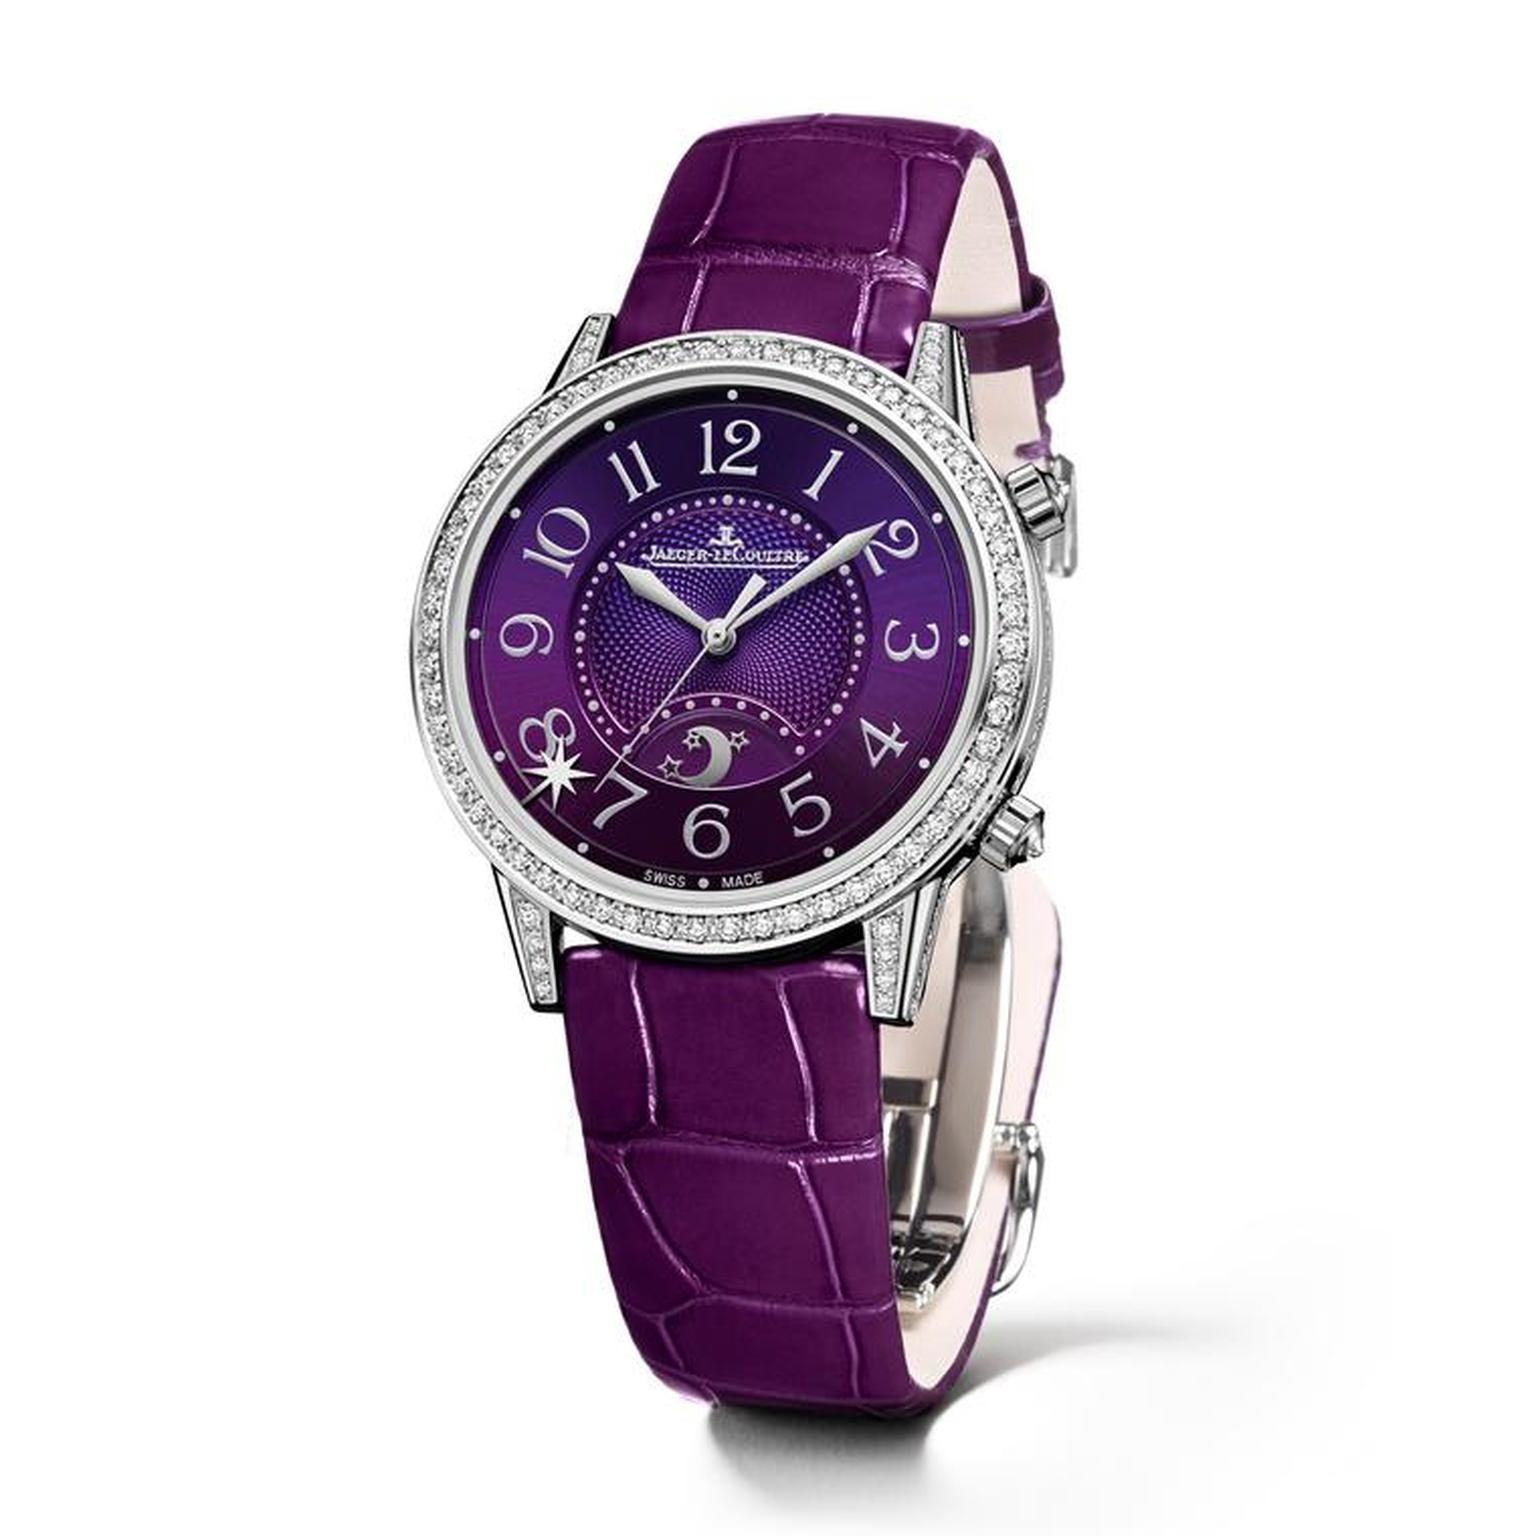 Jaeger-Le-Coultre Rendez-Vous Sonatina with purple dial